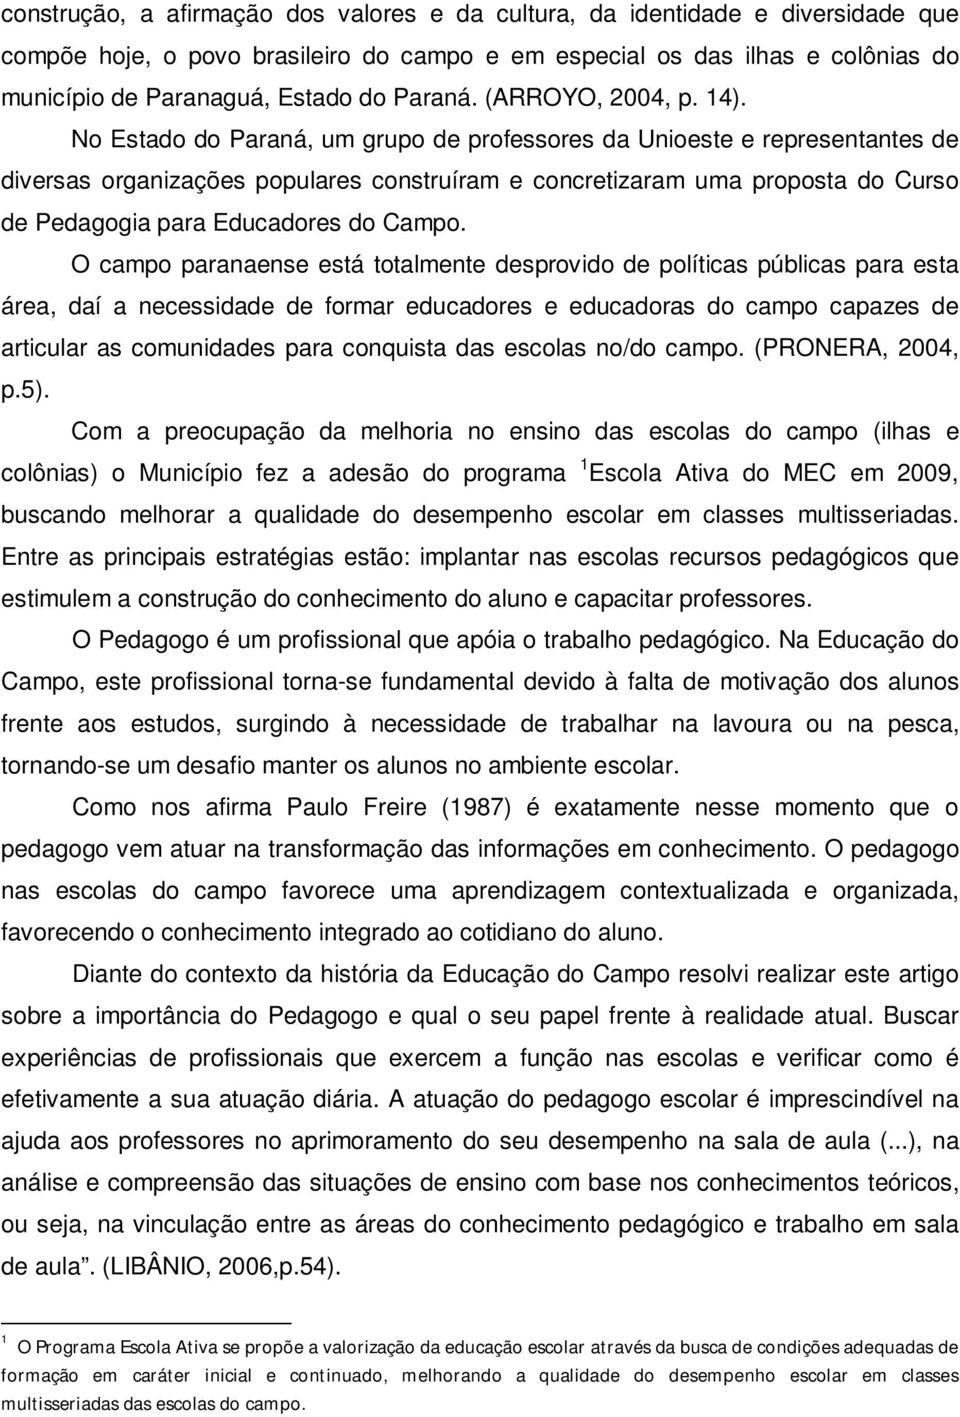 No Estado do Paraná, um grupo de professores da Unioeste e representantes de diversas organizações populares construíram e concretizaram uma proposta do Curso de Pedagogia para Educadores do Campo.